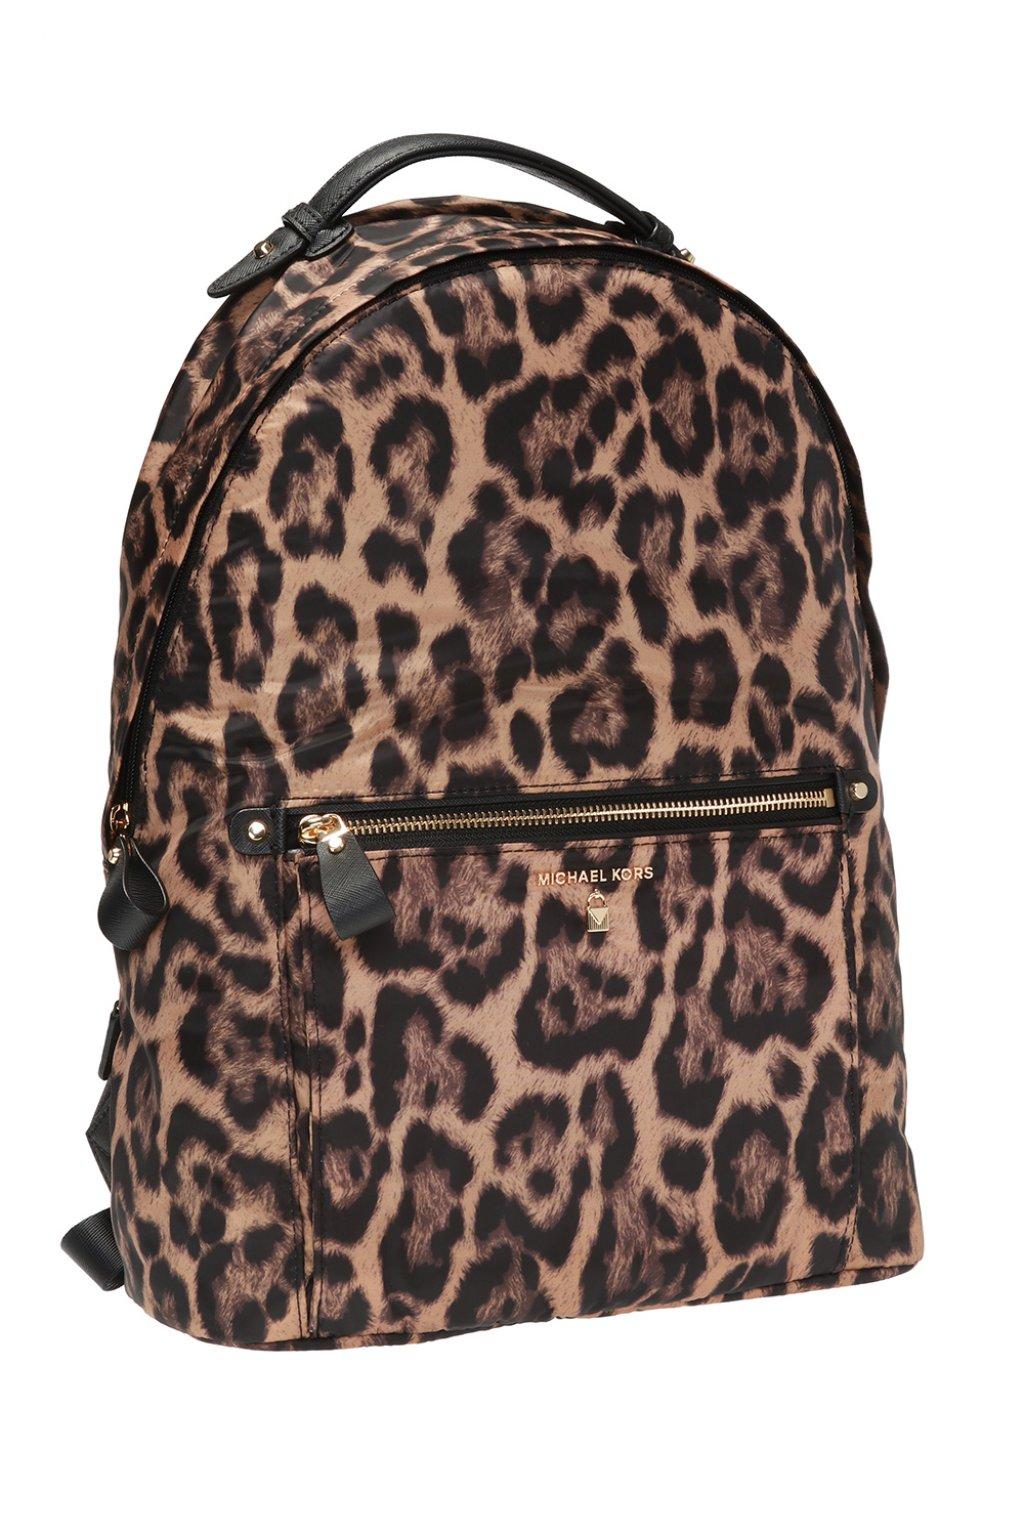 michael kors animal print backpack